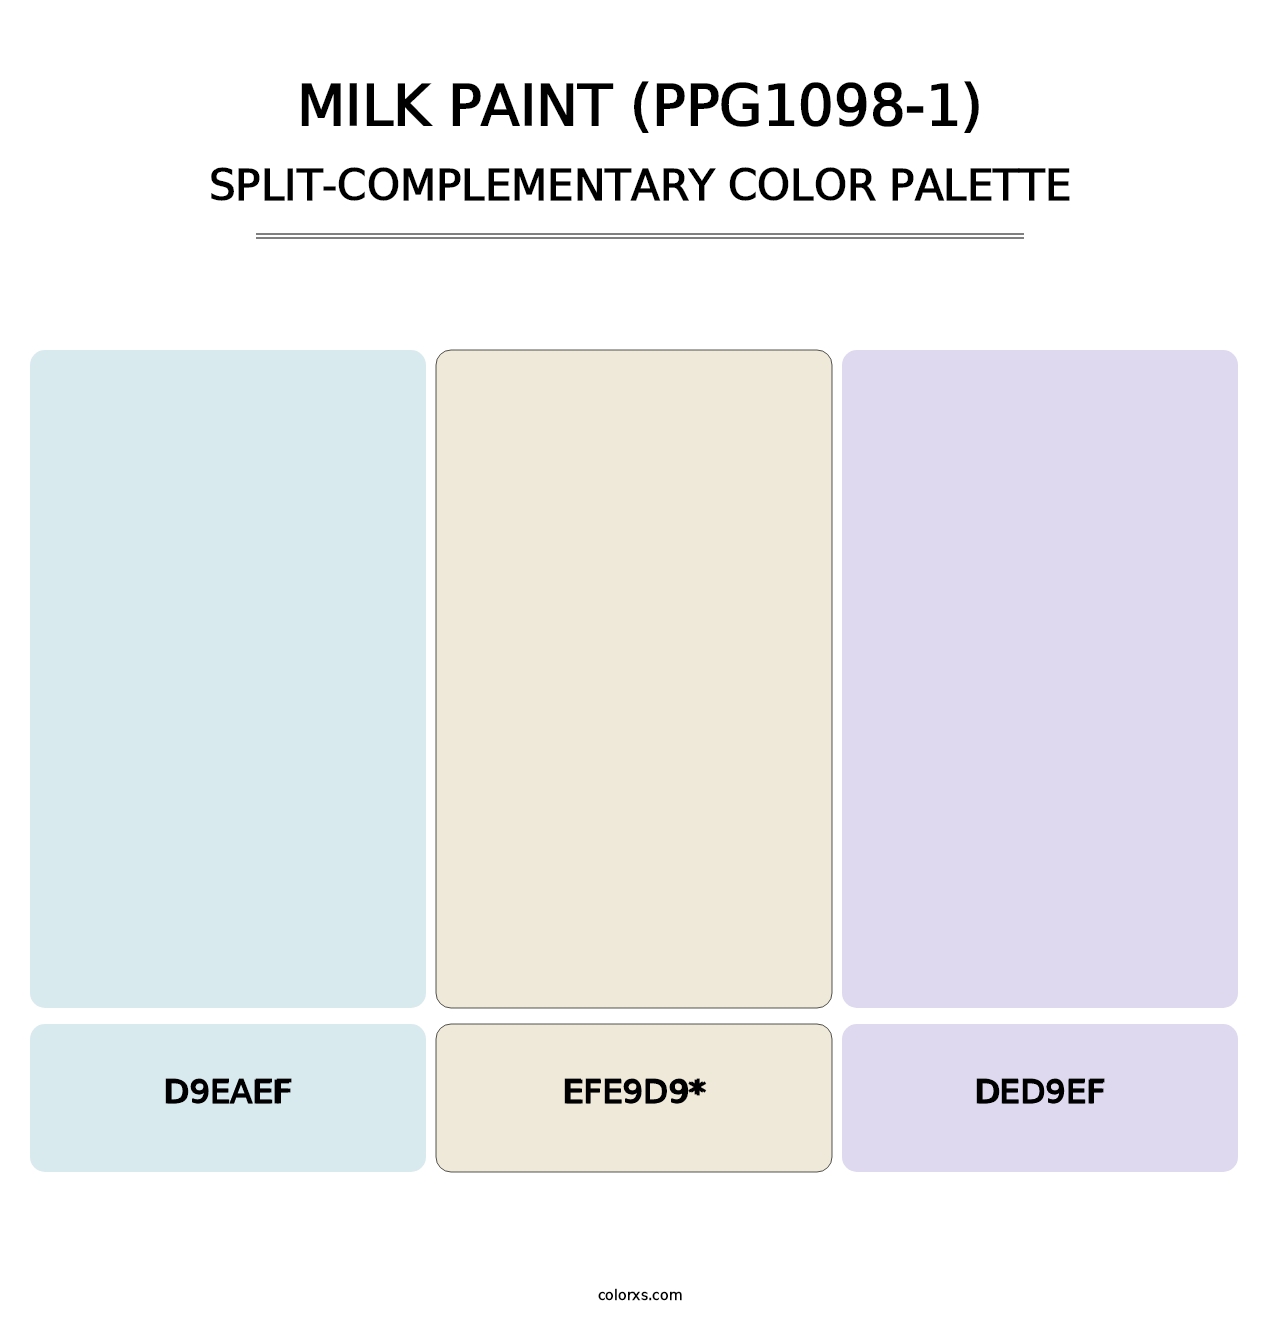 Milk Paint (PPG1098-1) - Split-Complementary Color Palette